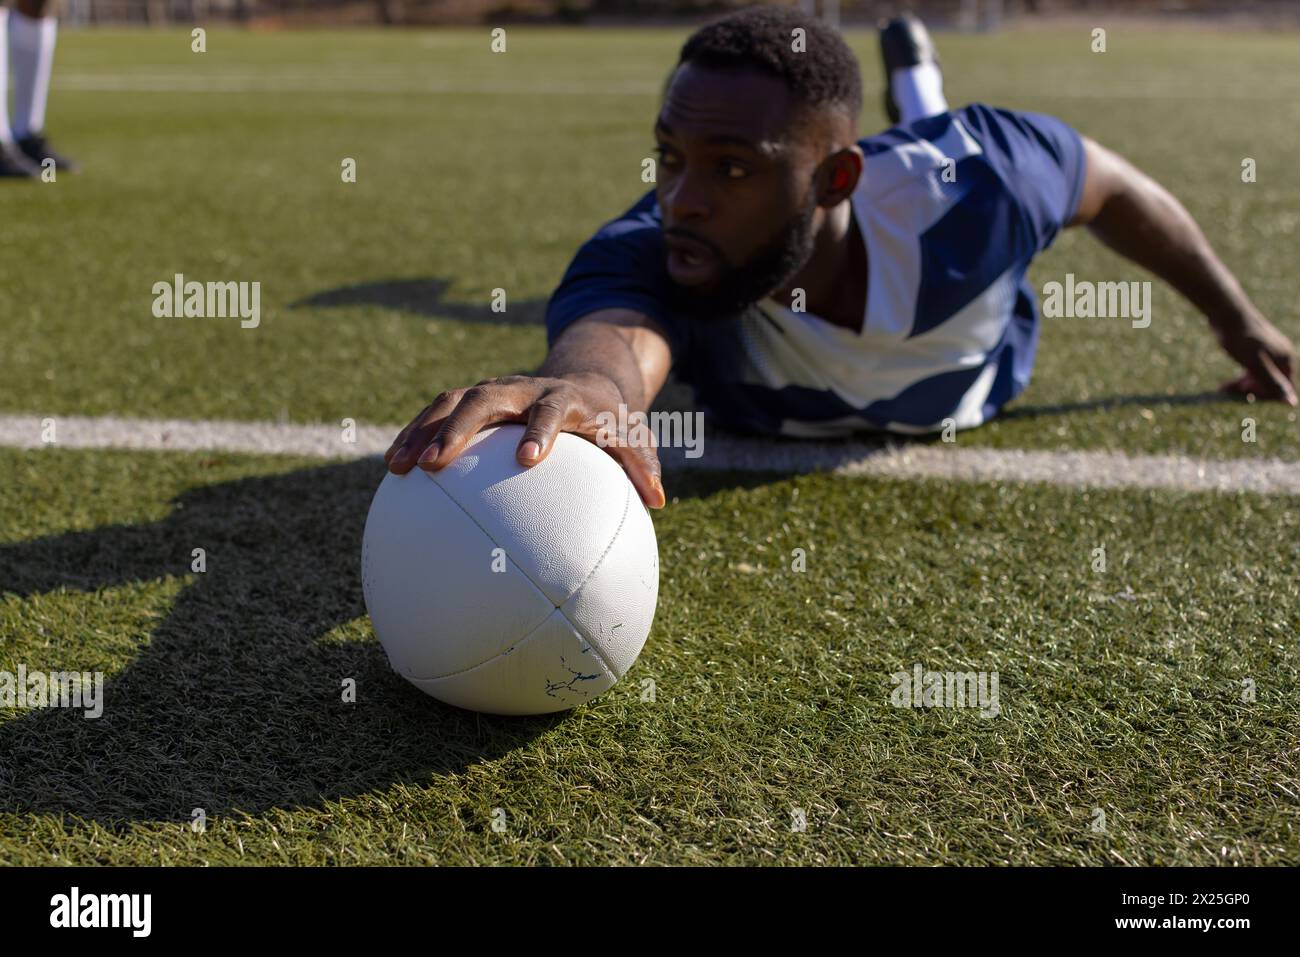 Jeune athlète afro-américain atteignant un ballon de rugby sur l'herbe pour marquer un essai Banque D'Images